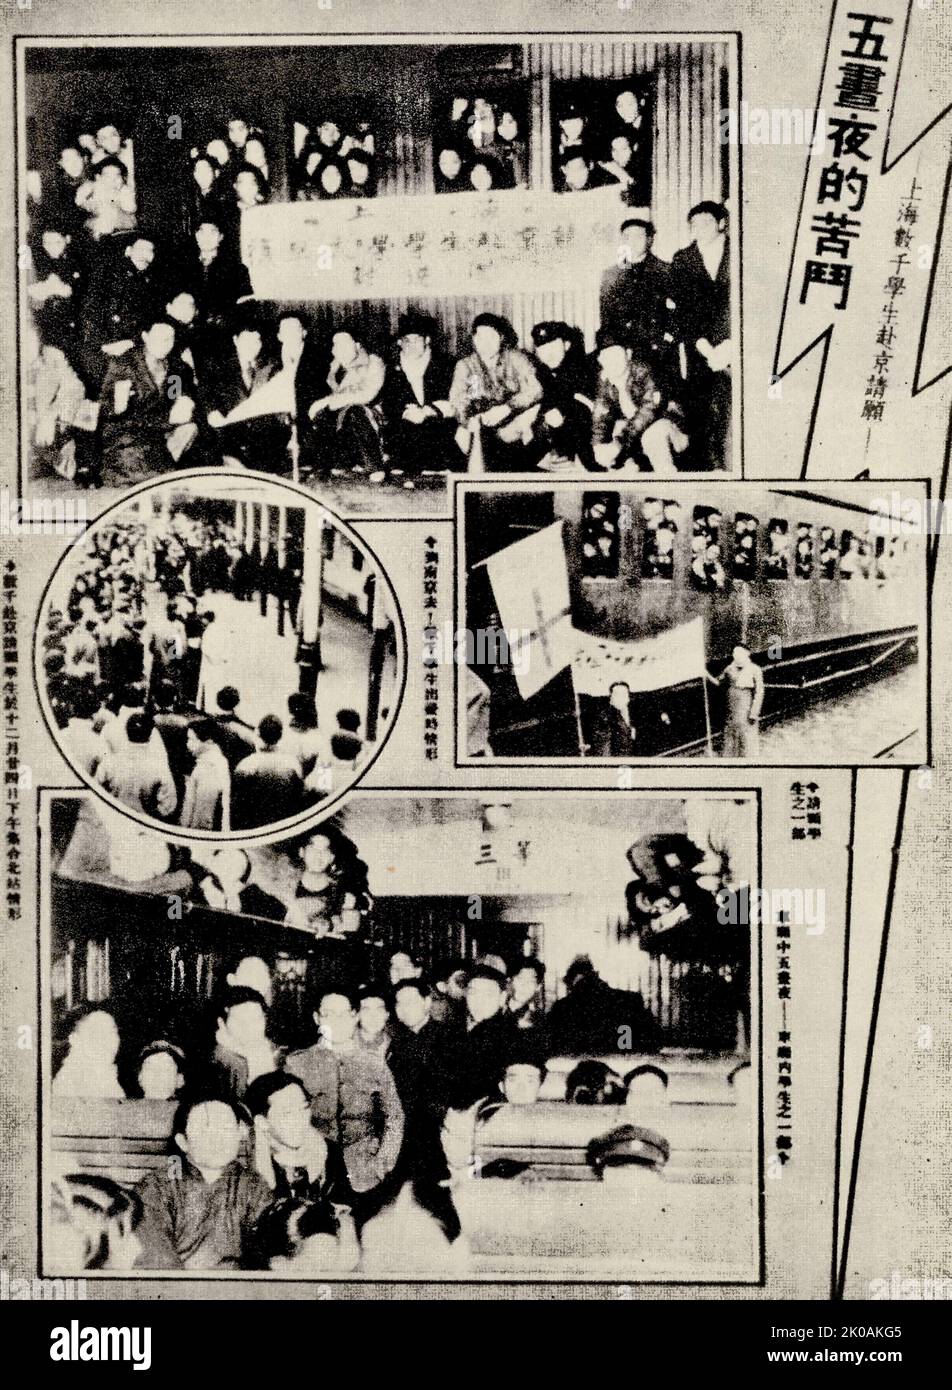 Am 24.. Dezember, zwei Tage nachdem sie am Nordbahnhof behindert worden waren, fuhren Studenten aus Shanghai mit ihren Zügen nach Nanjing, um eine Petition einzureichen. Sie fordern patriotische Aktionen. Stockfoto